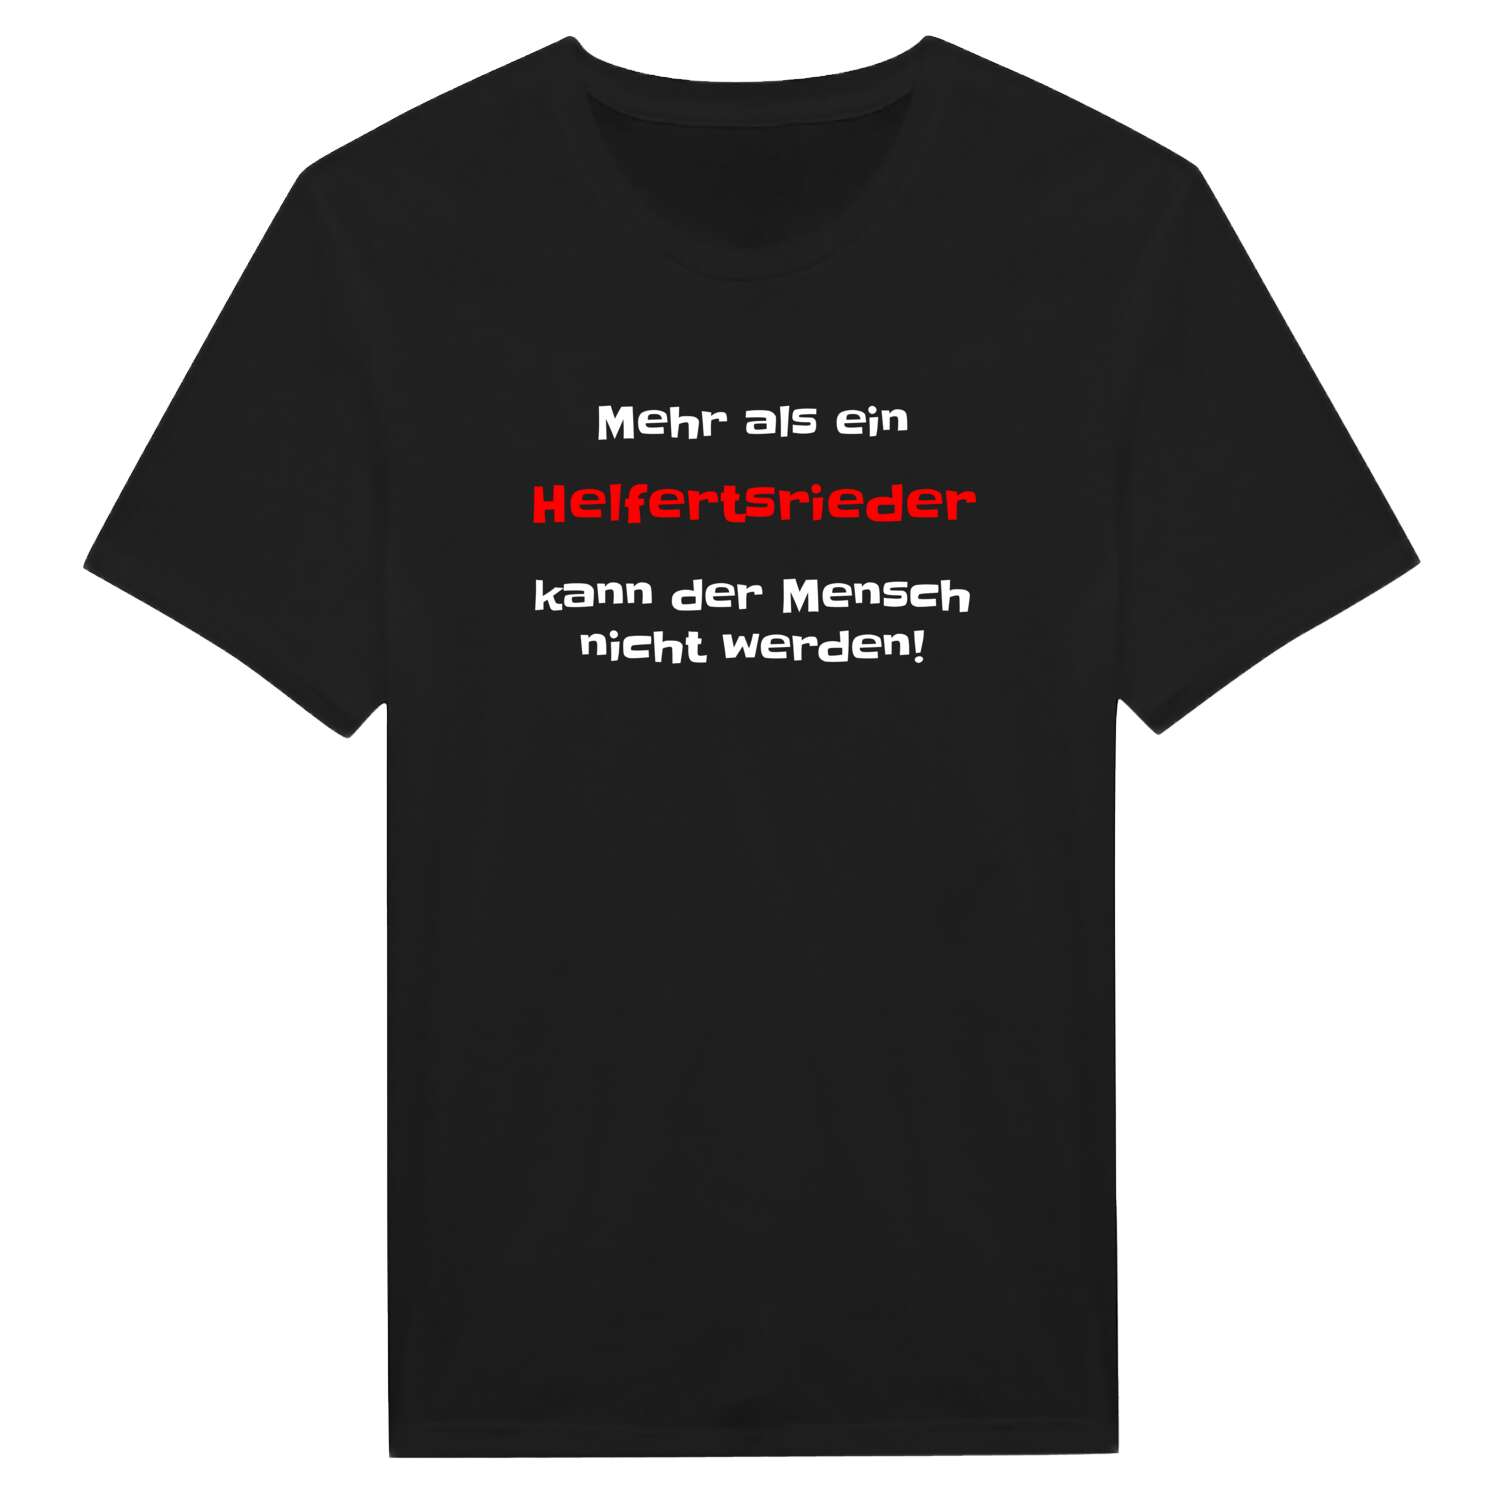 Helfertsried T-Shirt »Mehr als ein«